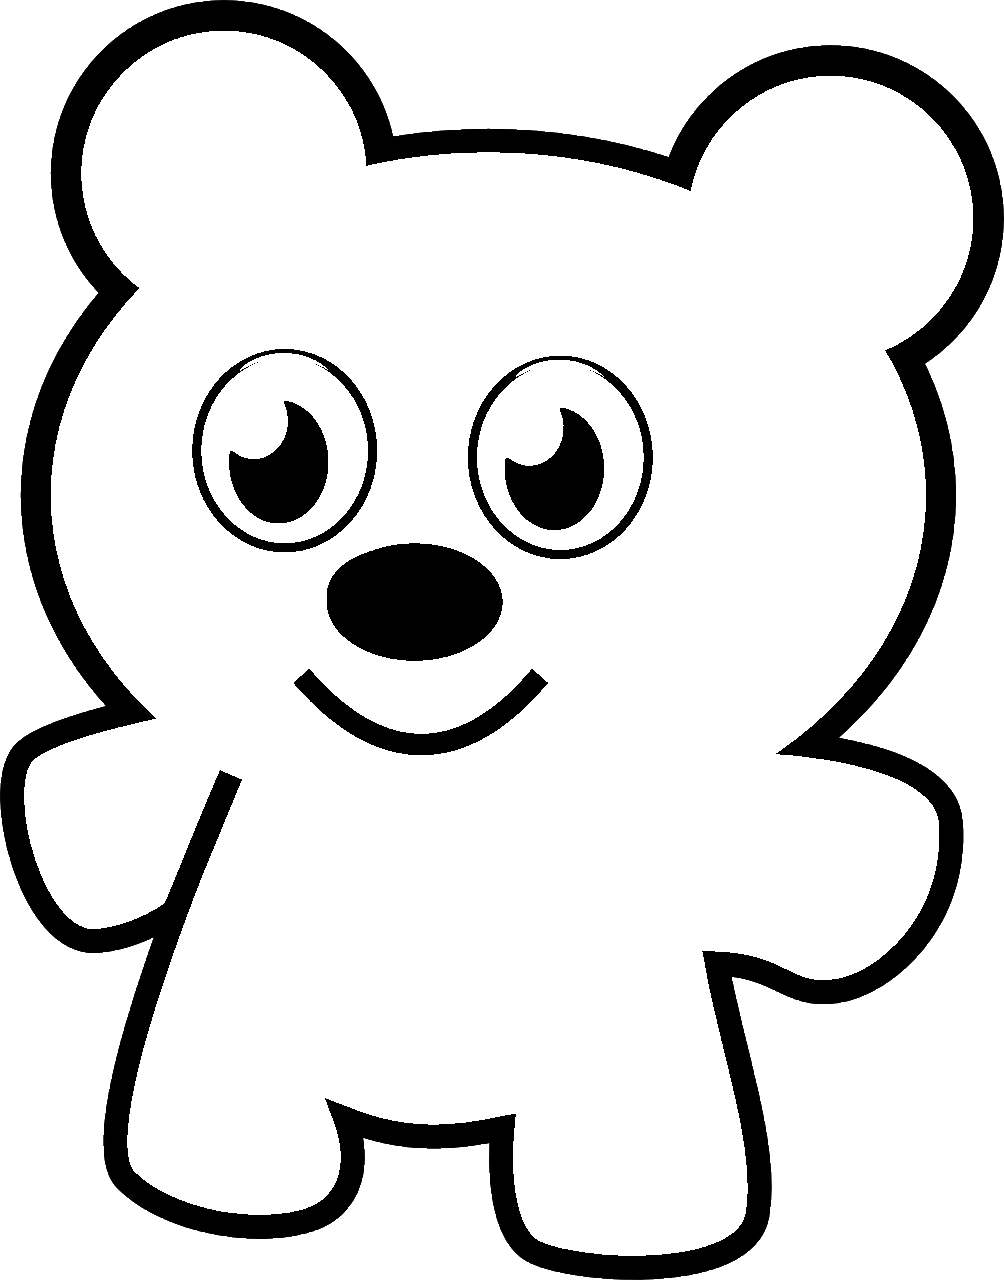 Disegno da colorare di orso Teddy Bear